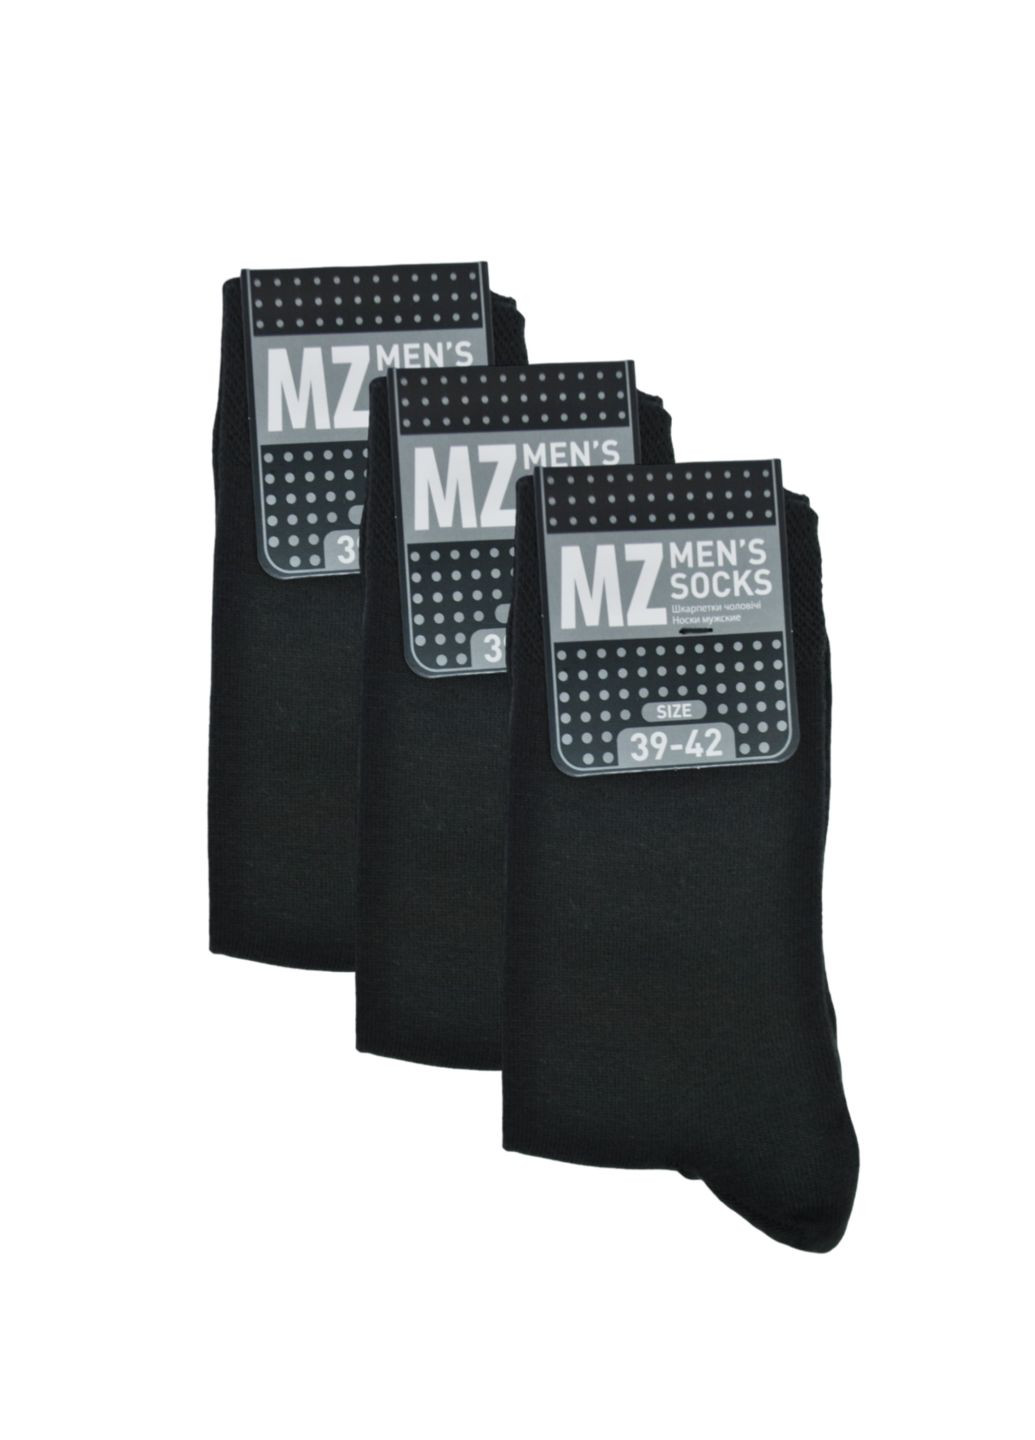 NTF Шкарпетки чол. (середньої довжини) MS3C/Sl-cl, р.39-42, black. Набір (3 шт.) MZ ms3c_sl-cl (259038665)